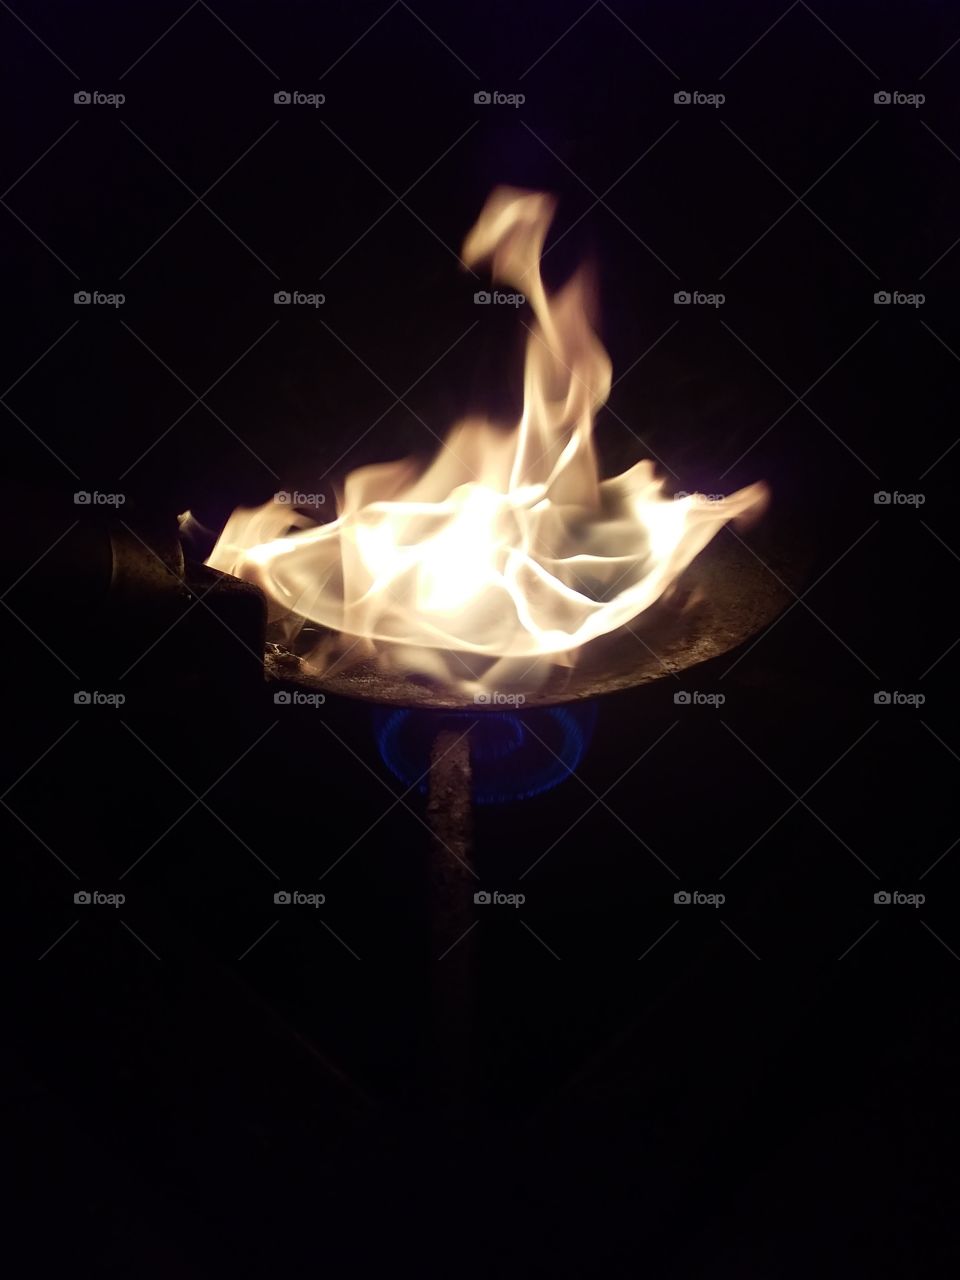 fire on chapati pan